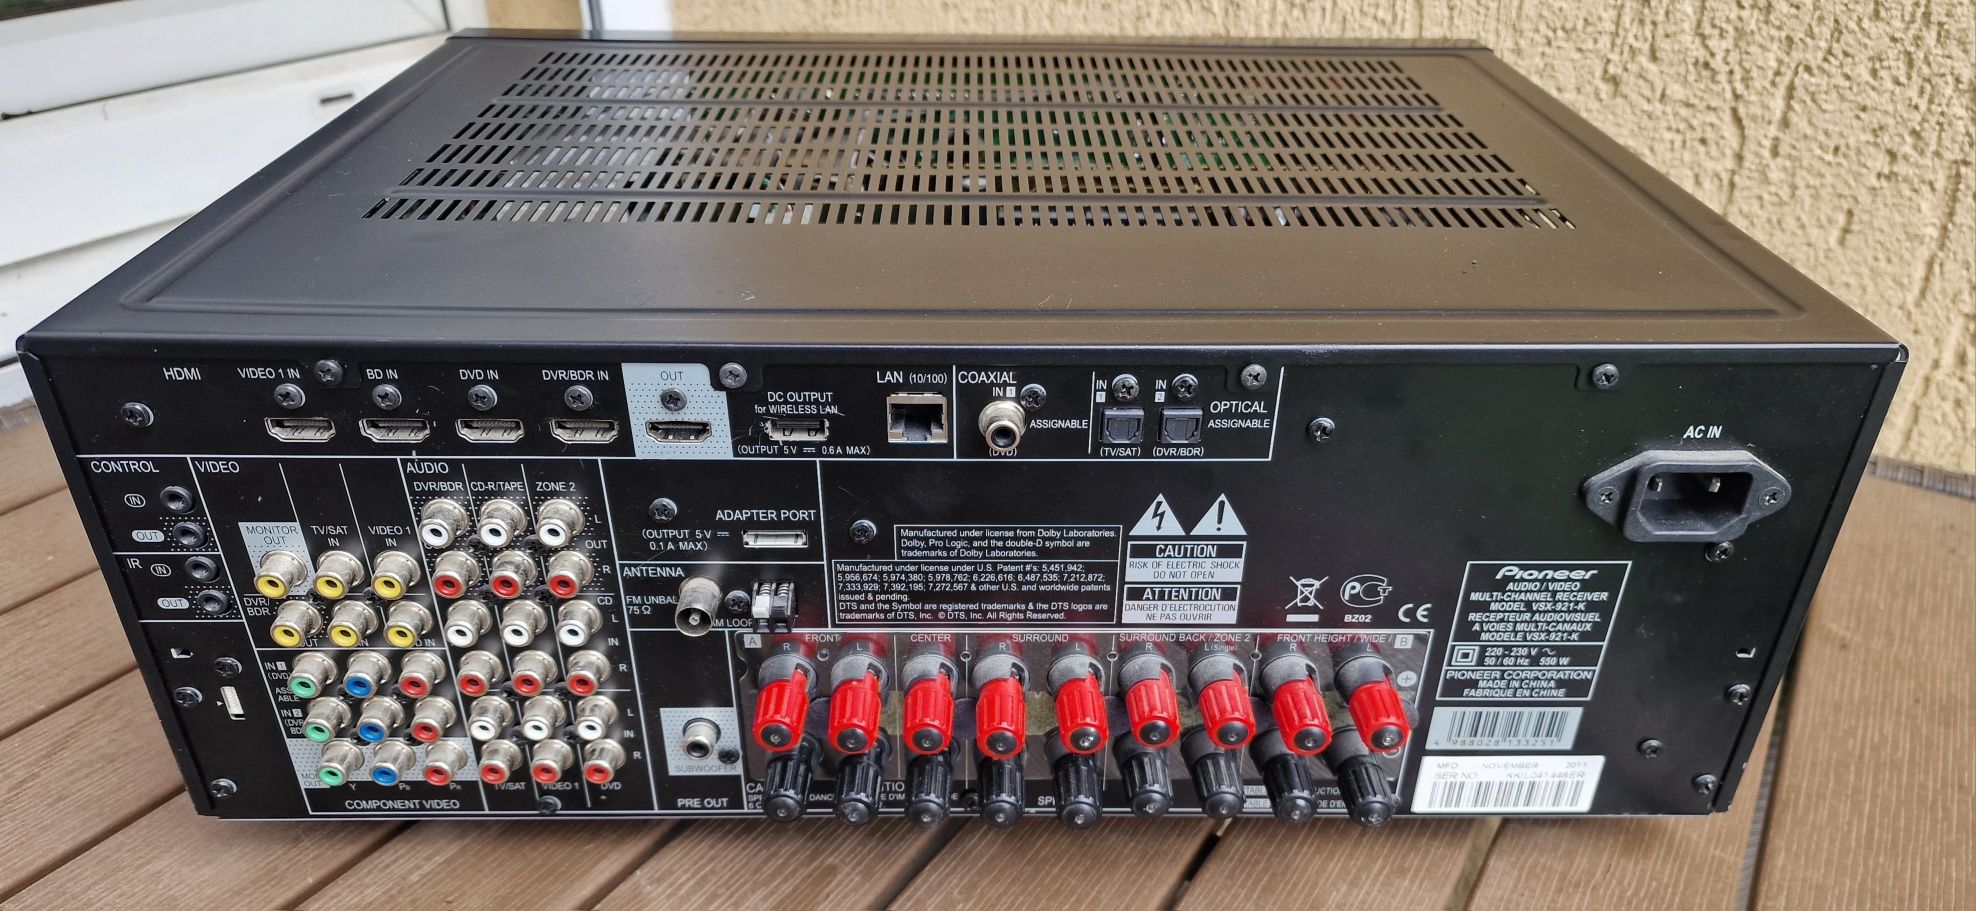 Amplituner pioneer VSX 921 K